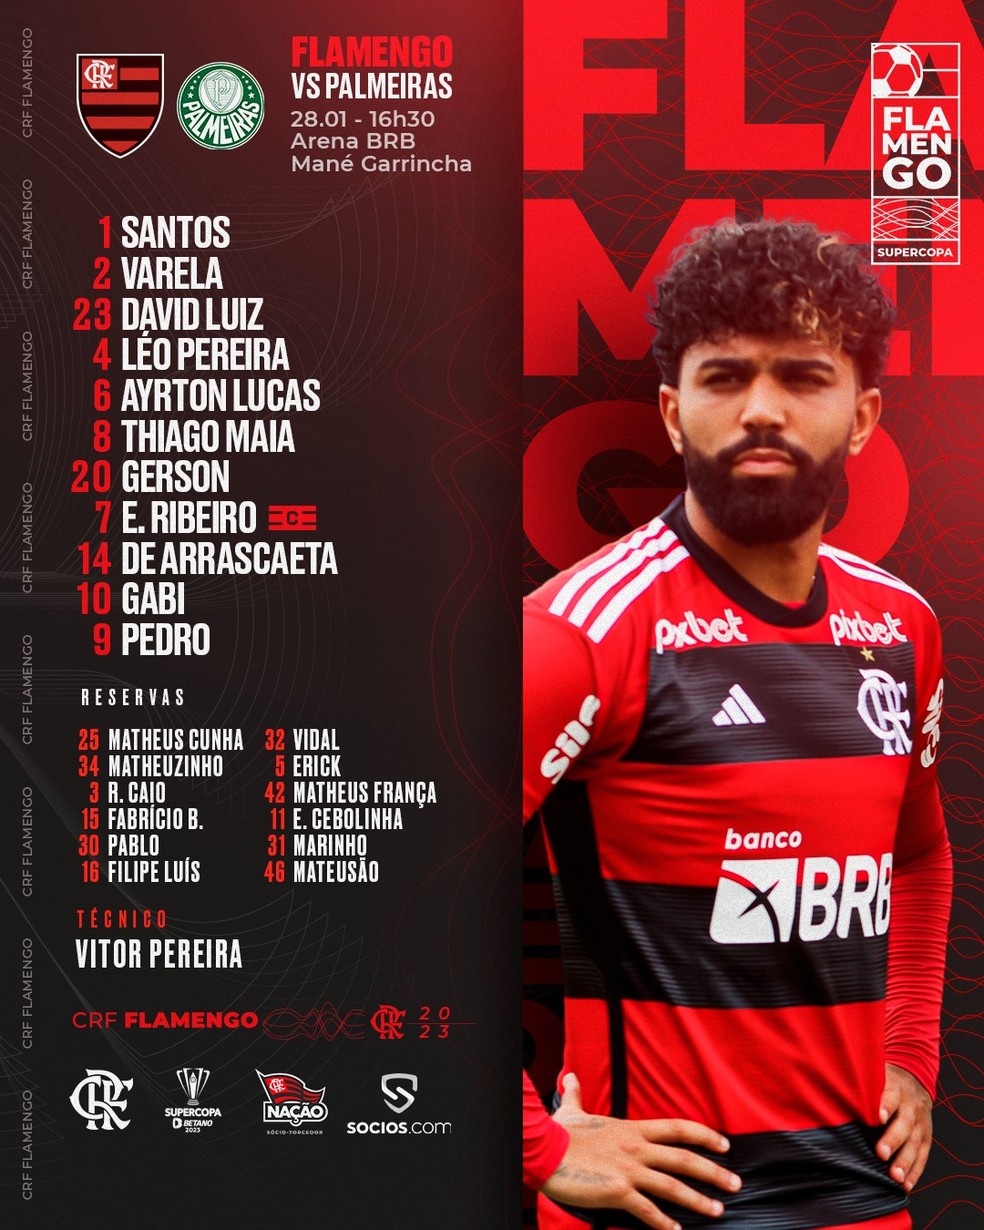 Com 9 jogos e 2 competições, veja calendário do Flamengo no